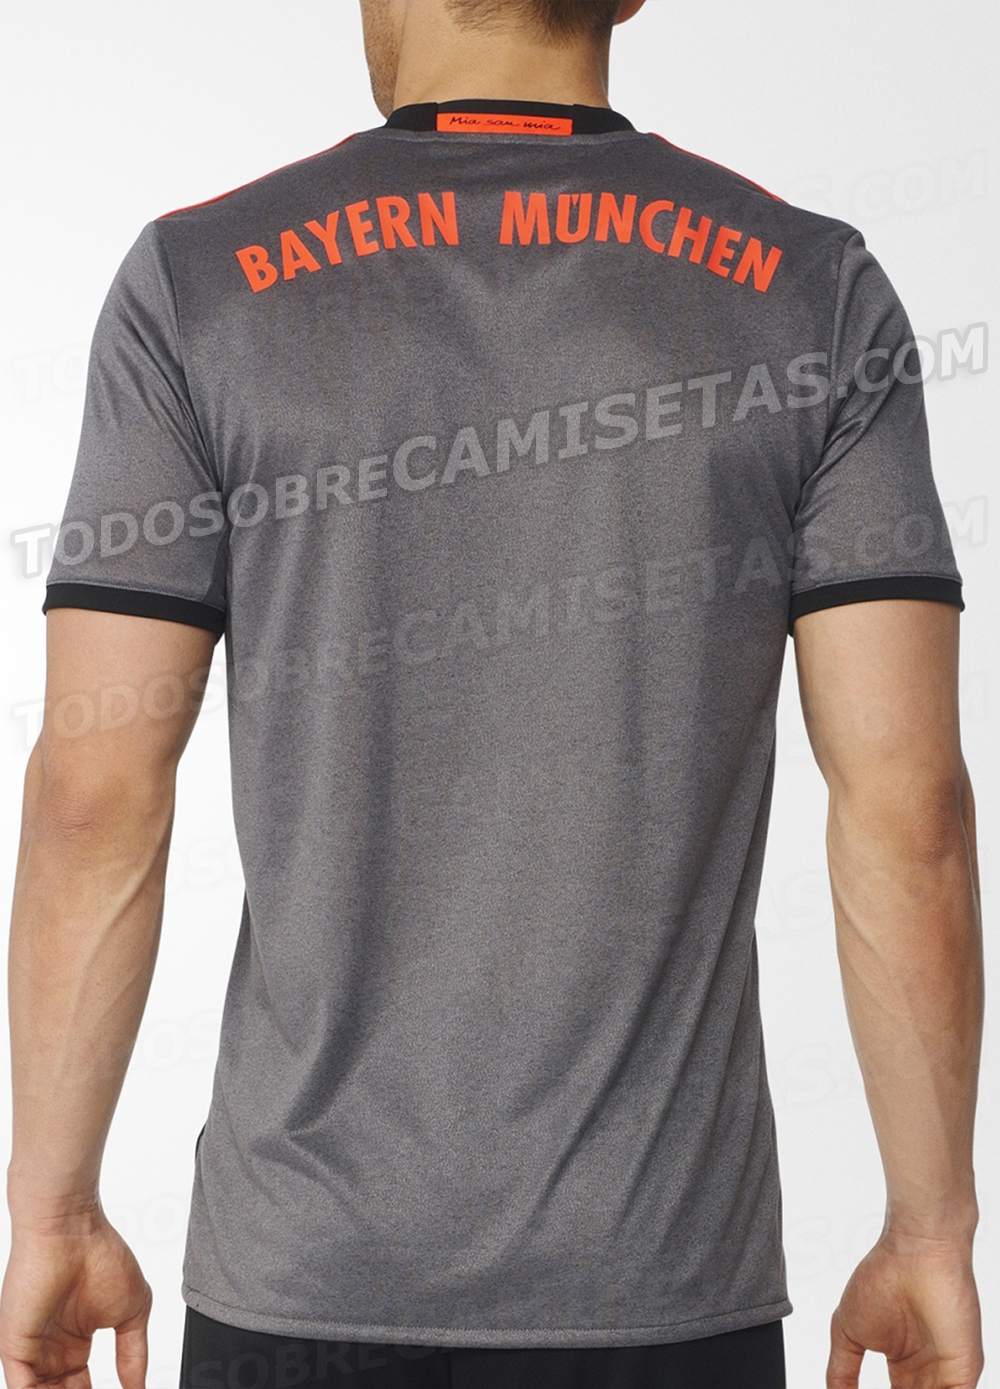 Bayern Munich 2016-17 adidas away kit LEAKED